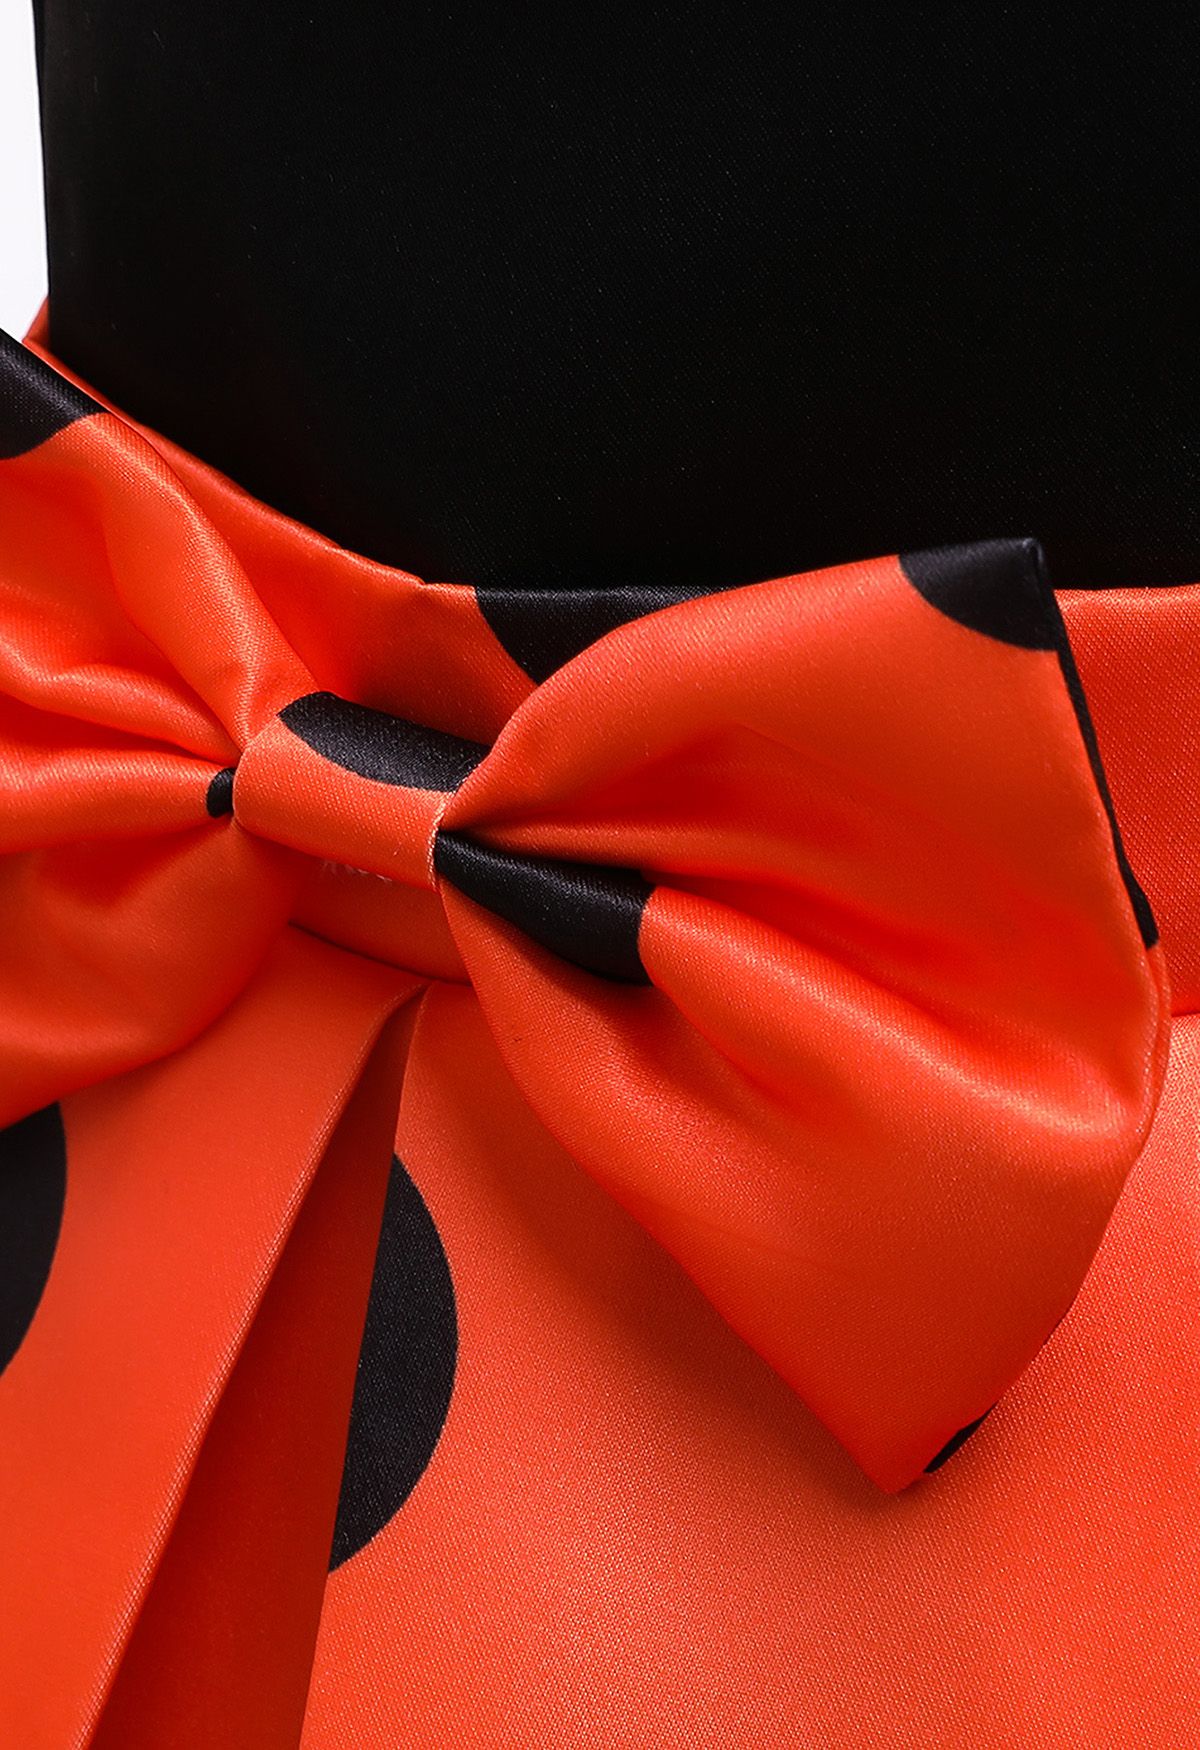 Polka Dot Bowknot Plissiertes Prinzessinnenkleid in Orange